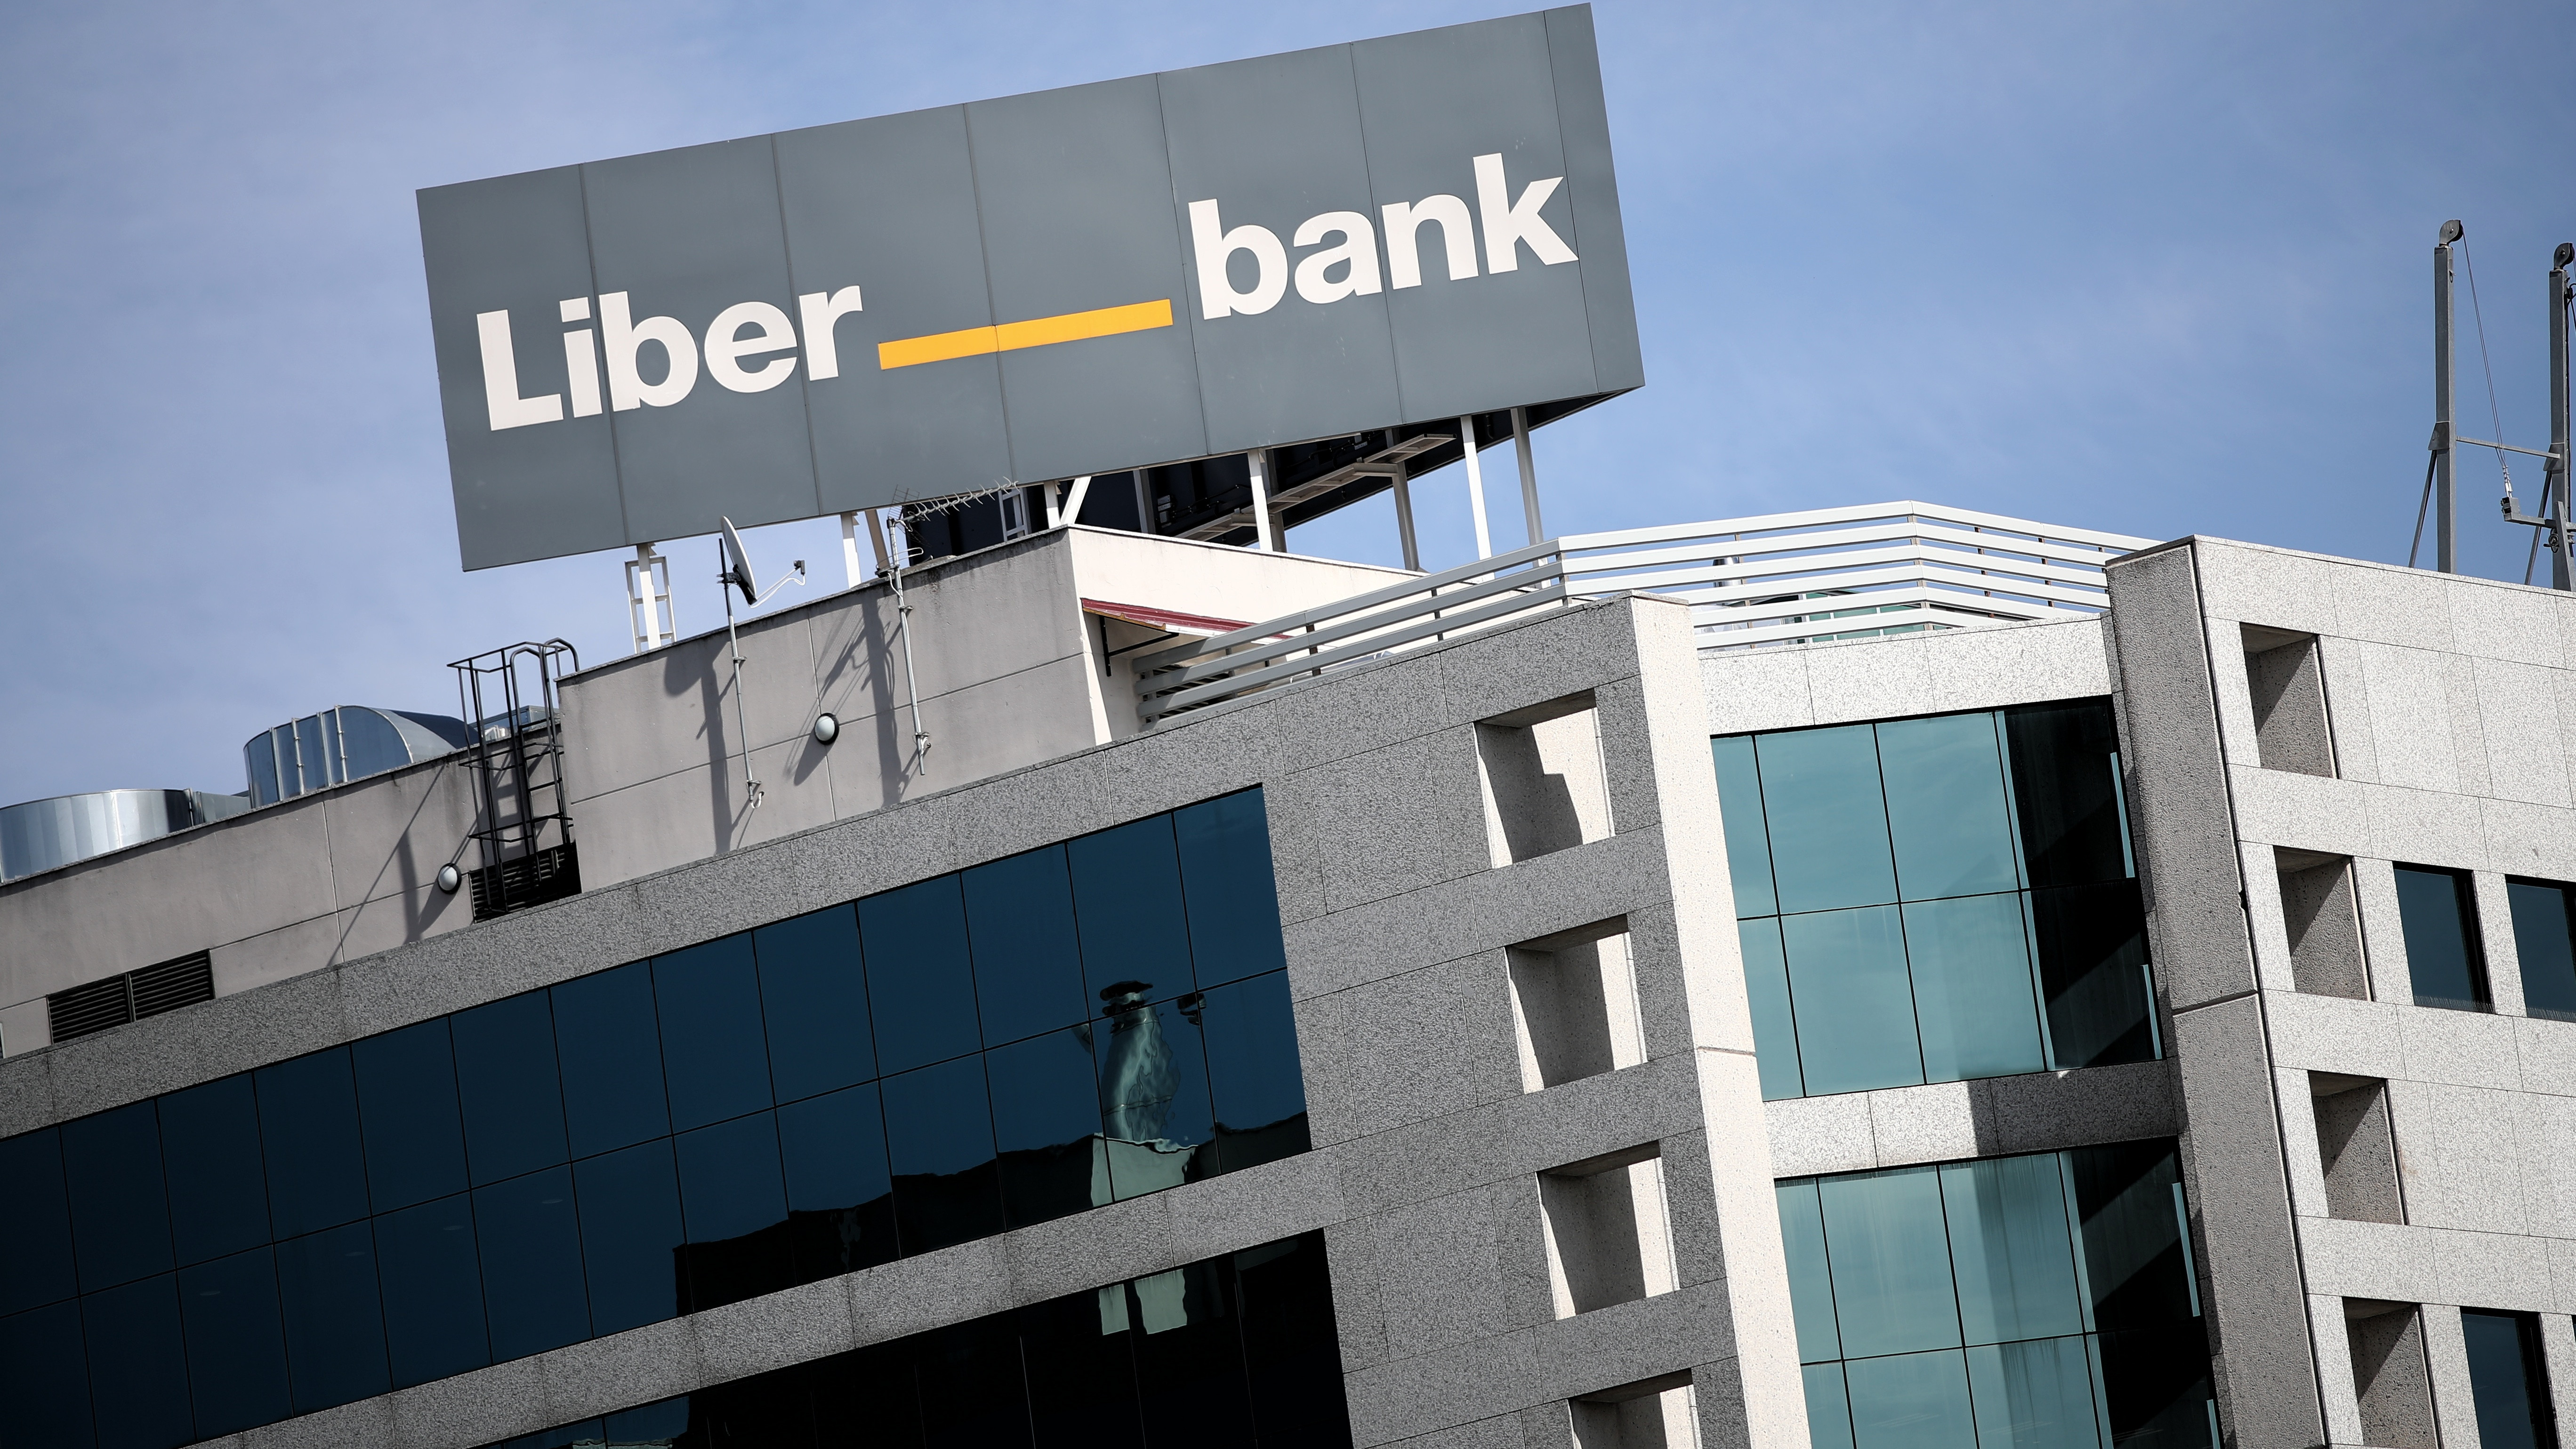 Liberbank aprueba su fusión con Unicaja para crear el quinto banco de España